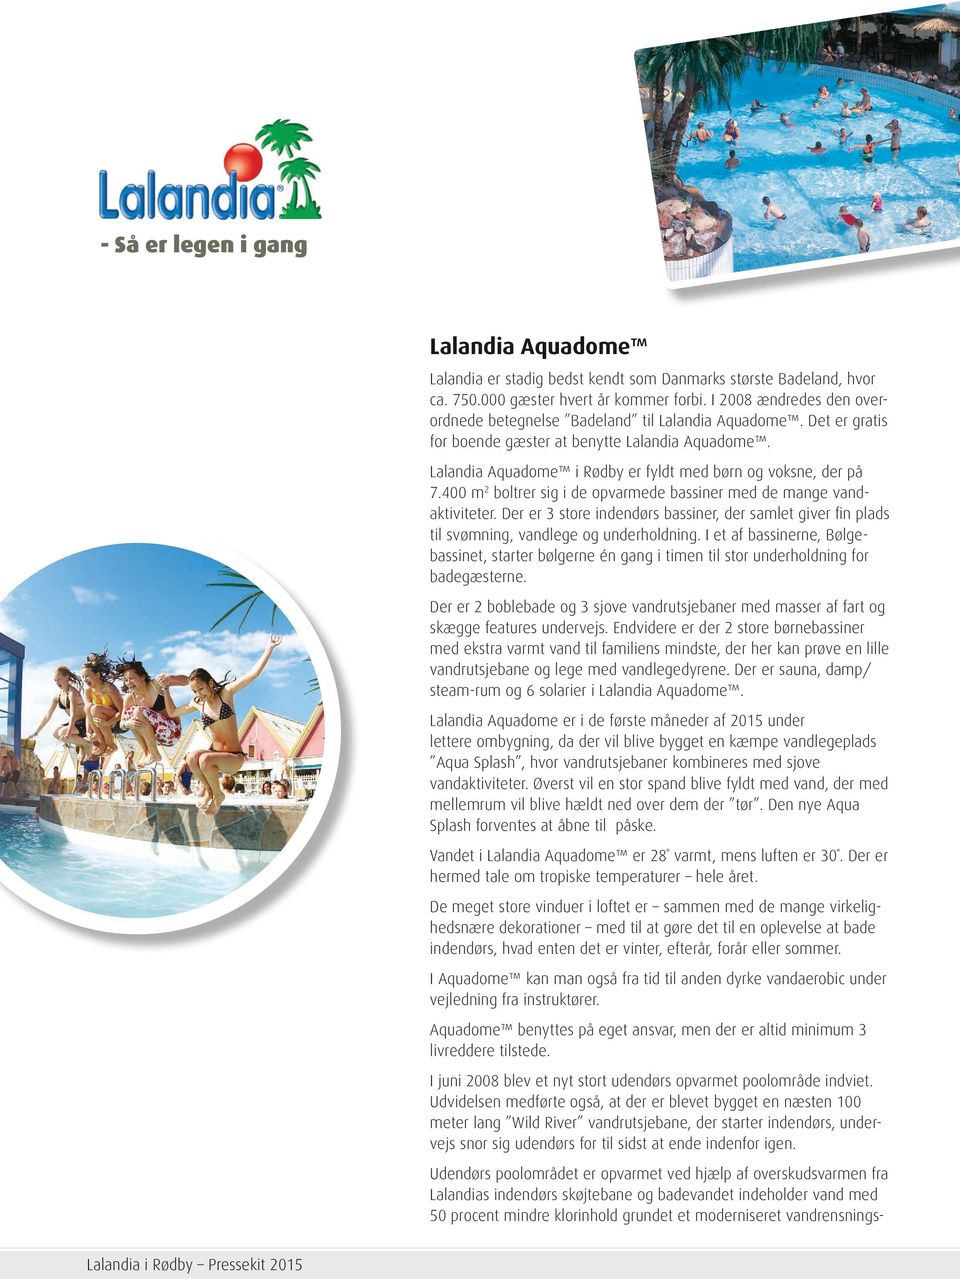 Lalandia Aquadome i Rødby er fyldt med børn og voksne, der på 7.400 m 2 boltrer sig i de opvarmede bassiner med de mange vandaktiviteter.